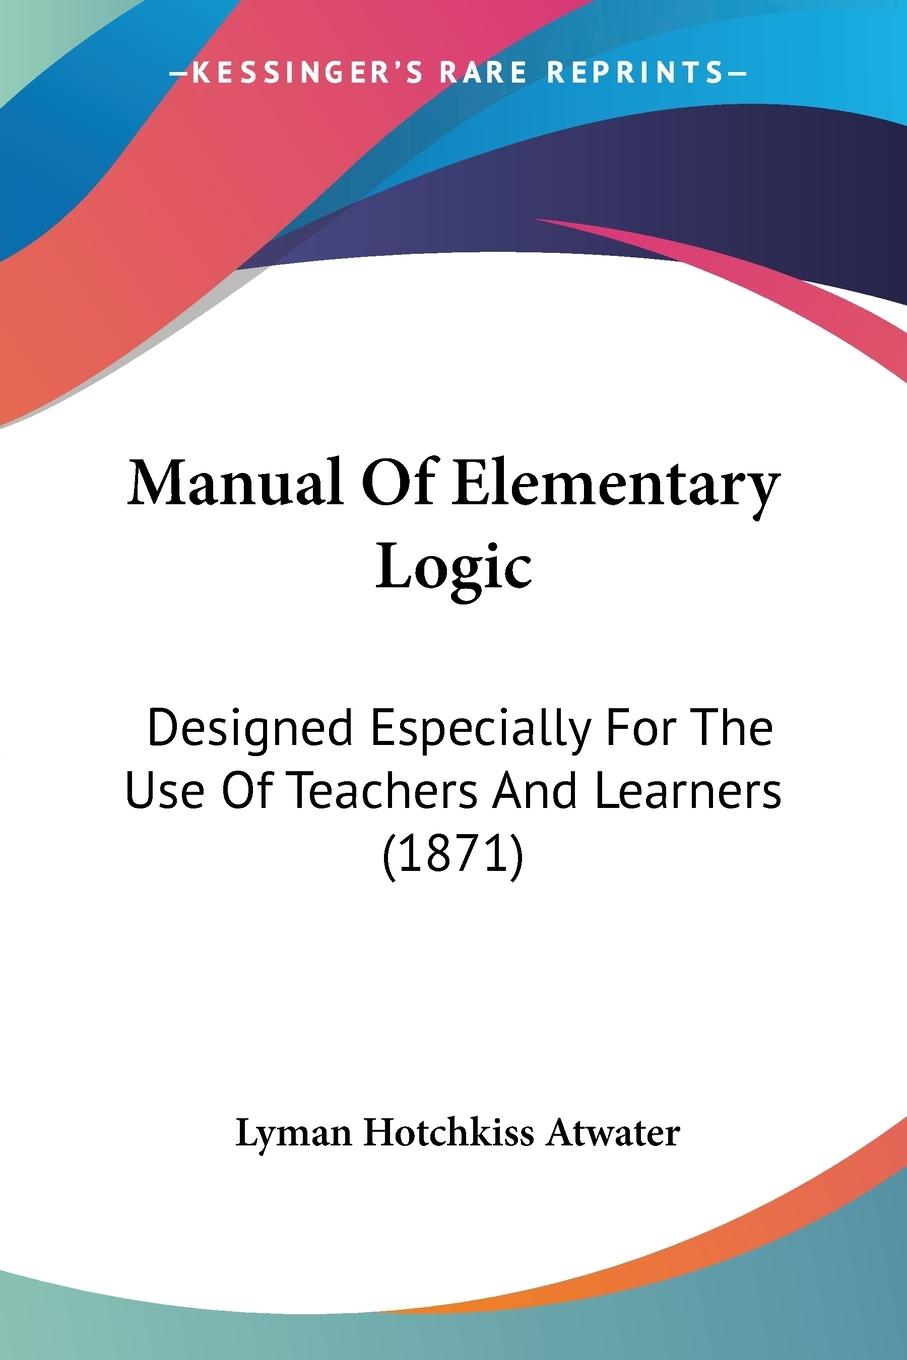 Manual Of Elementary Logic - Atwater, Lyman Hotchkiss